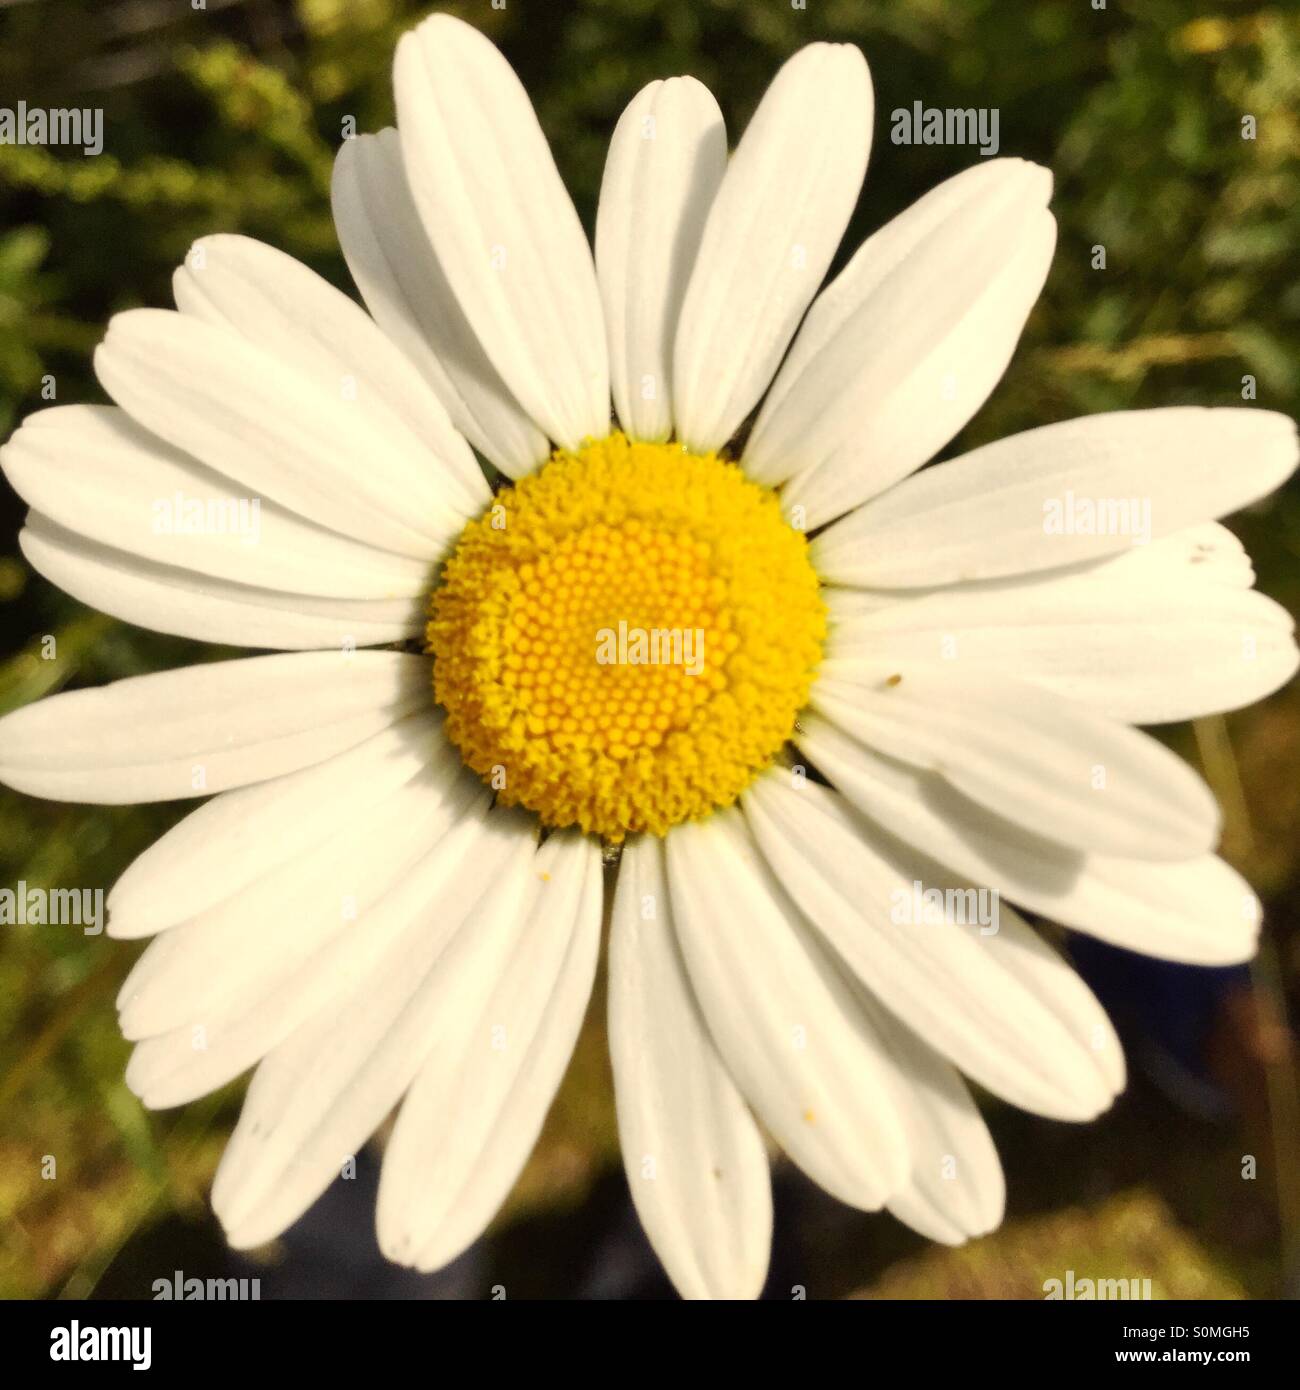 A daisy Stock Photo